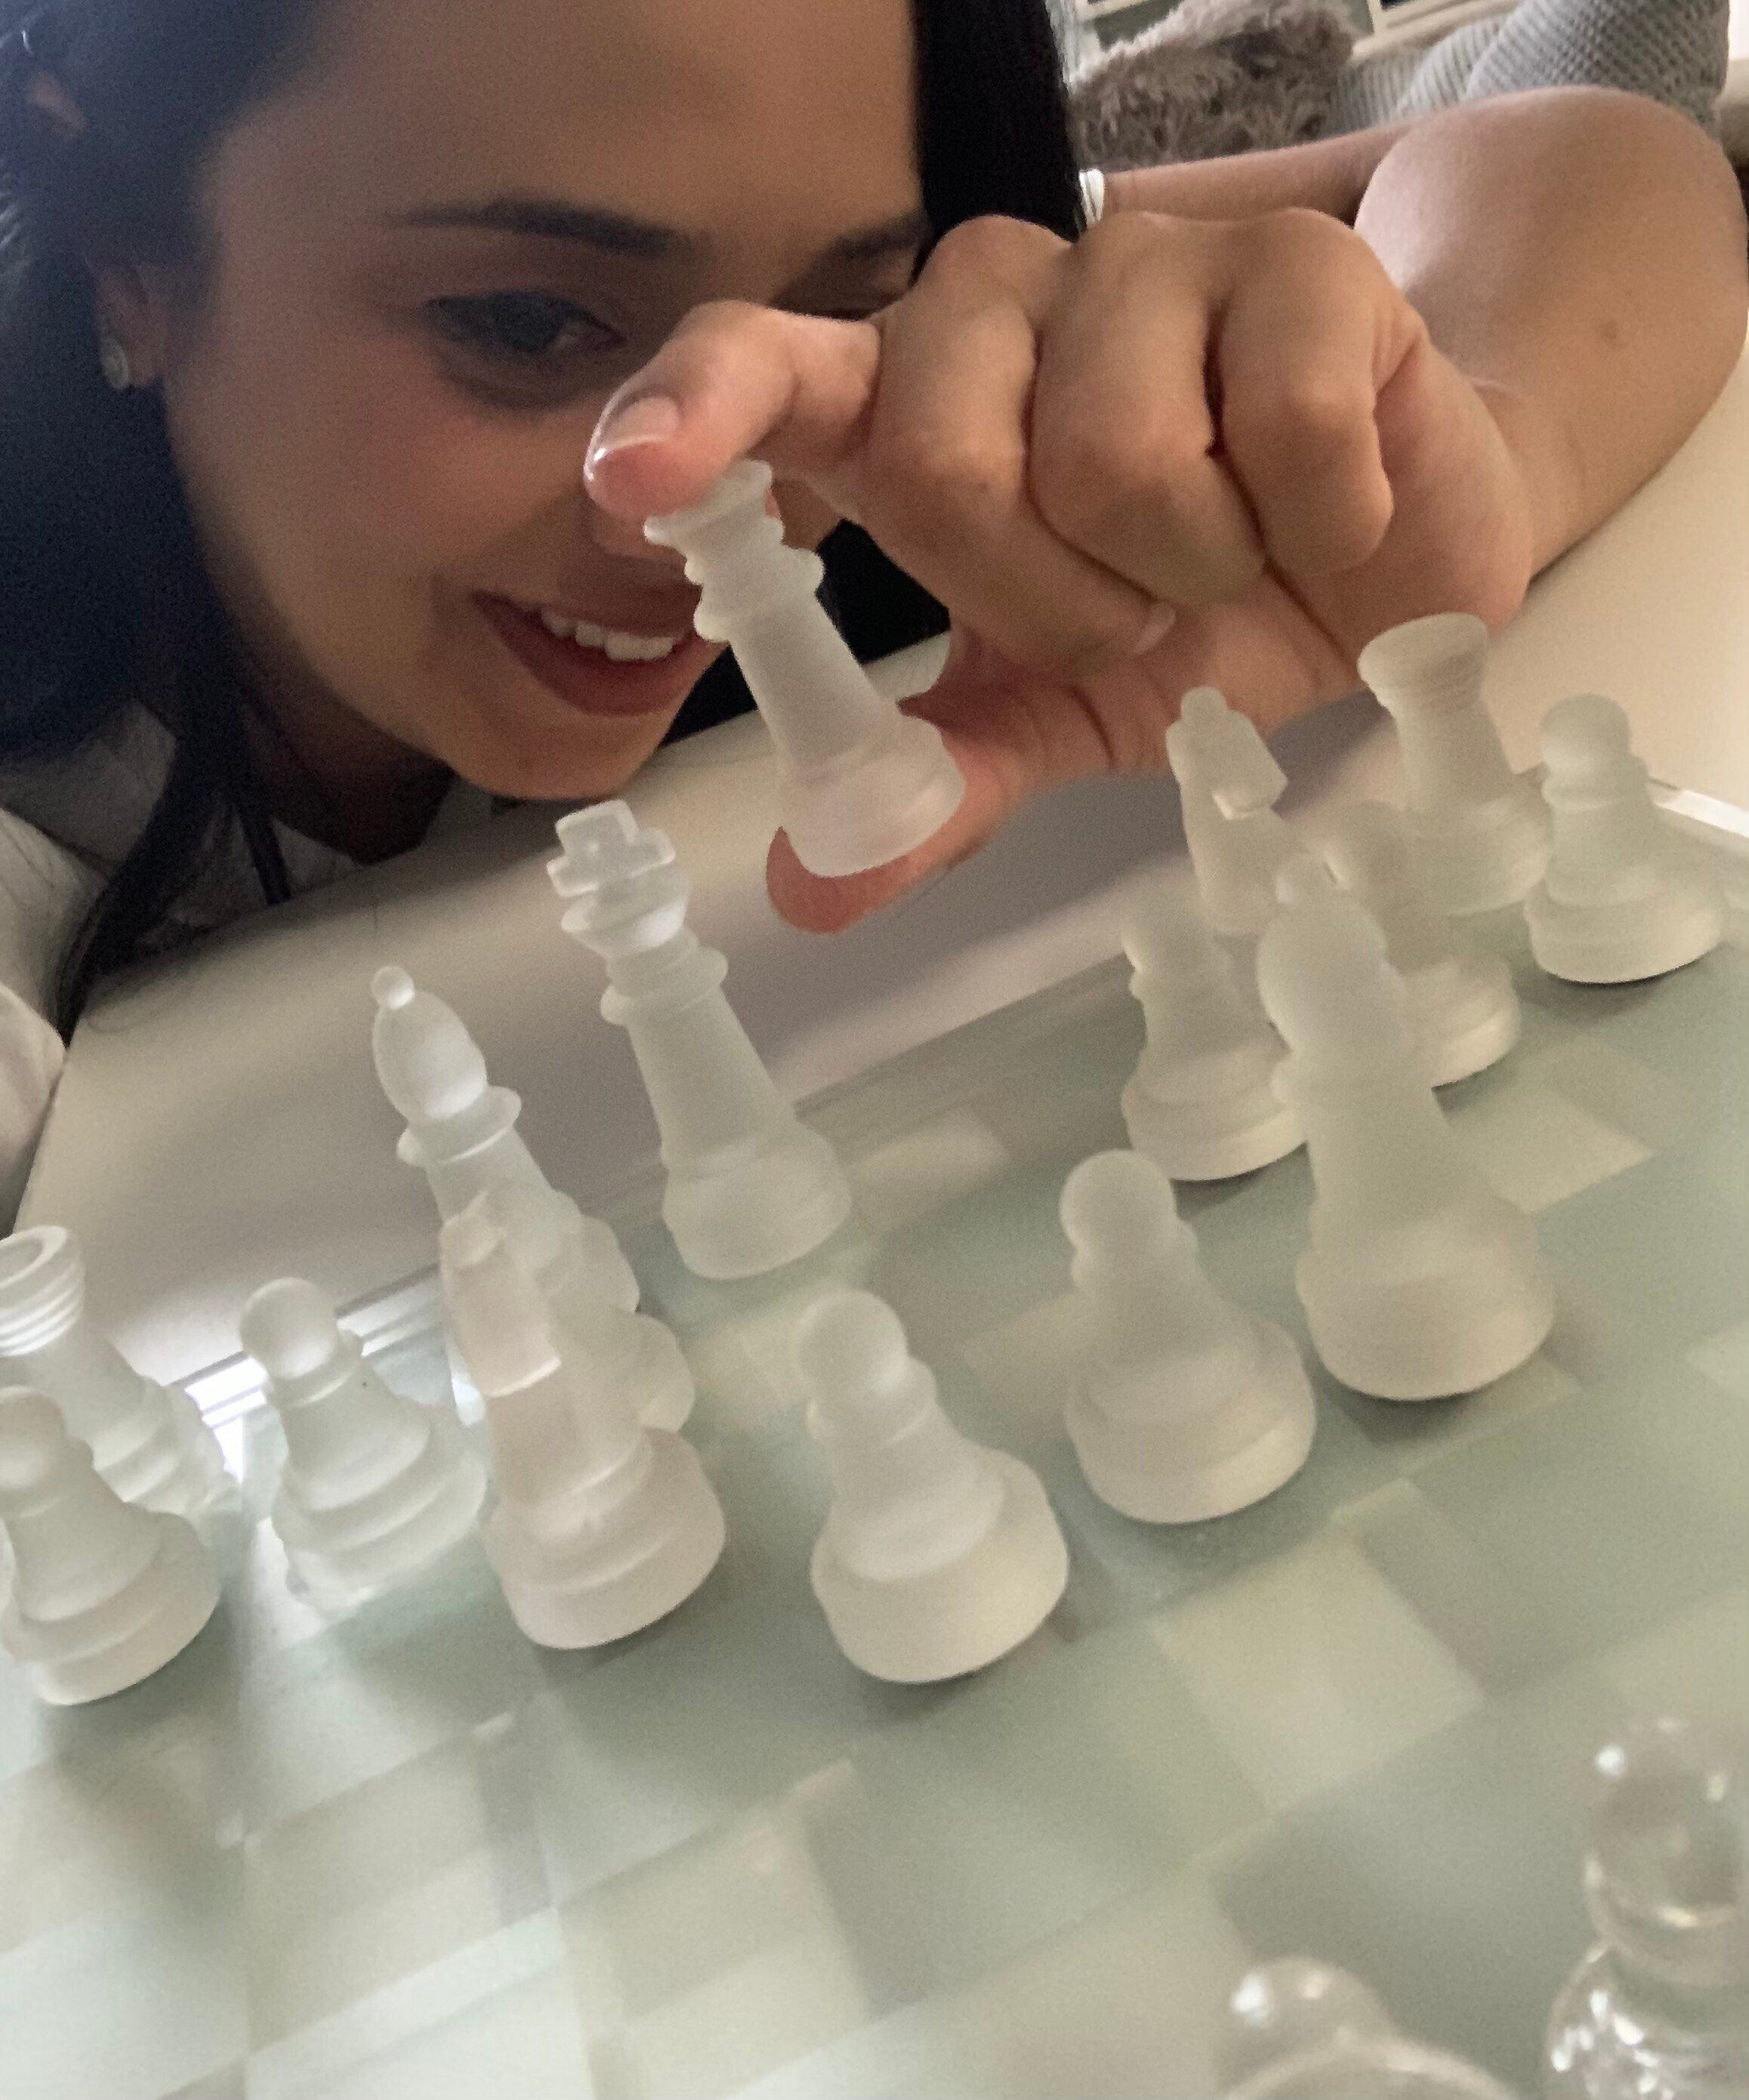 O Gambito da Rainha“ provocou um pico no interesse por xadrez em novas  gerações